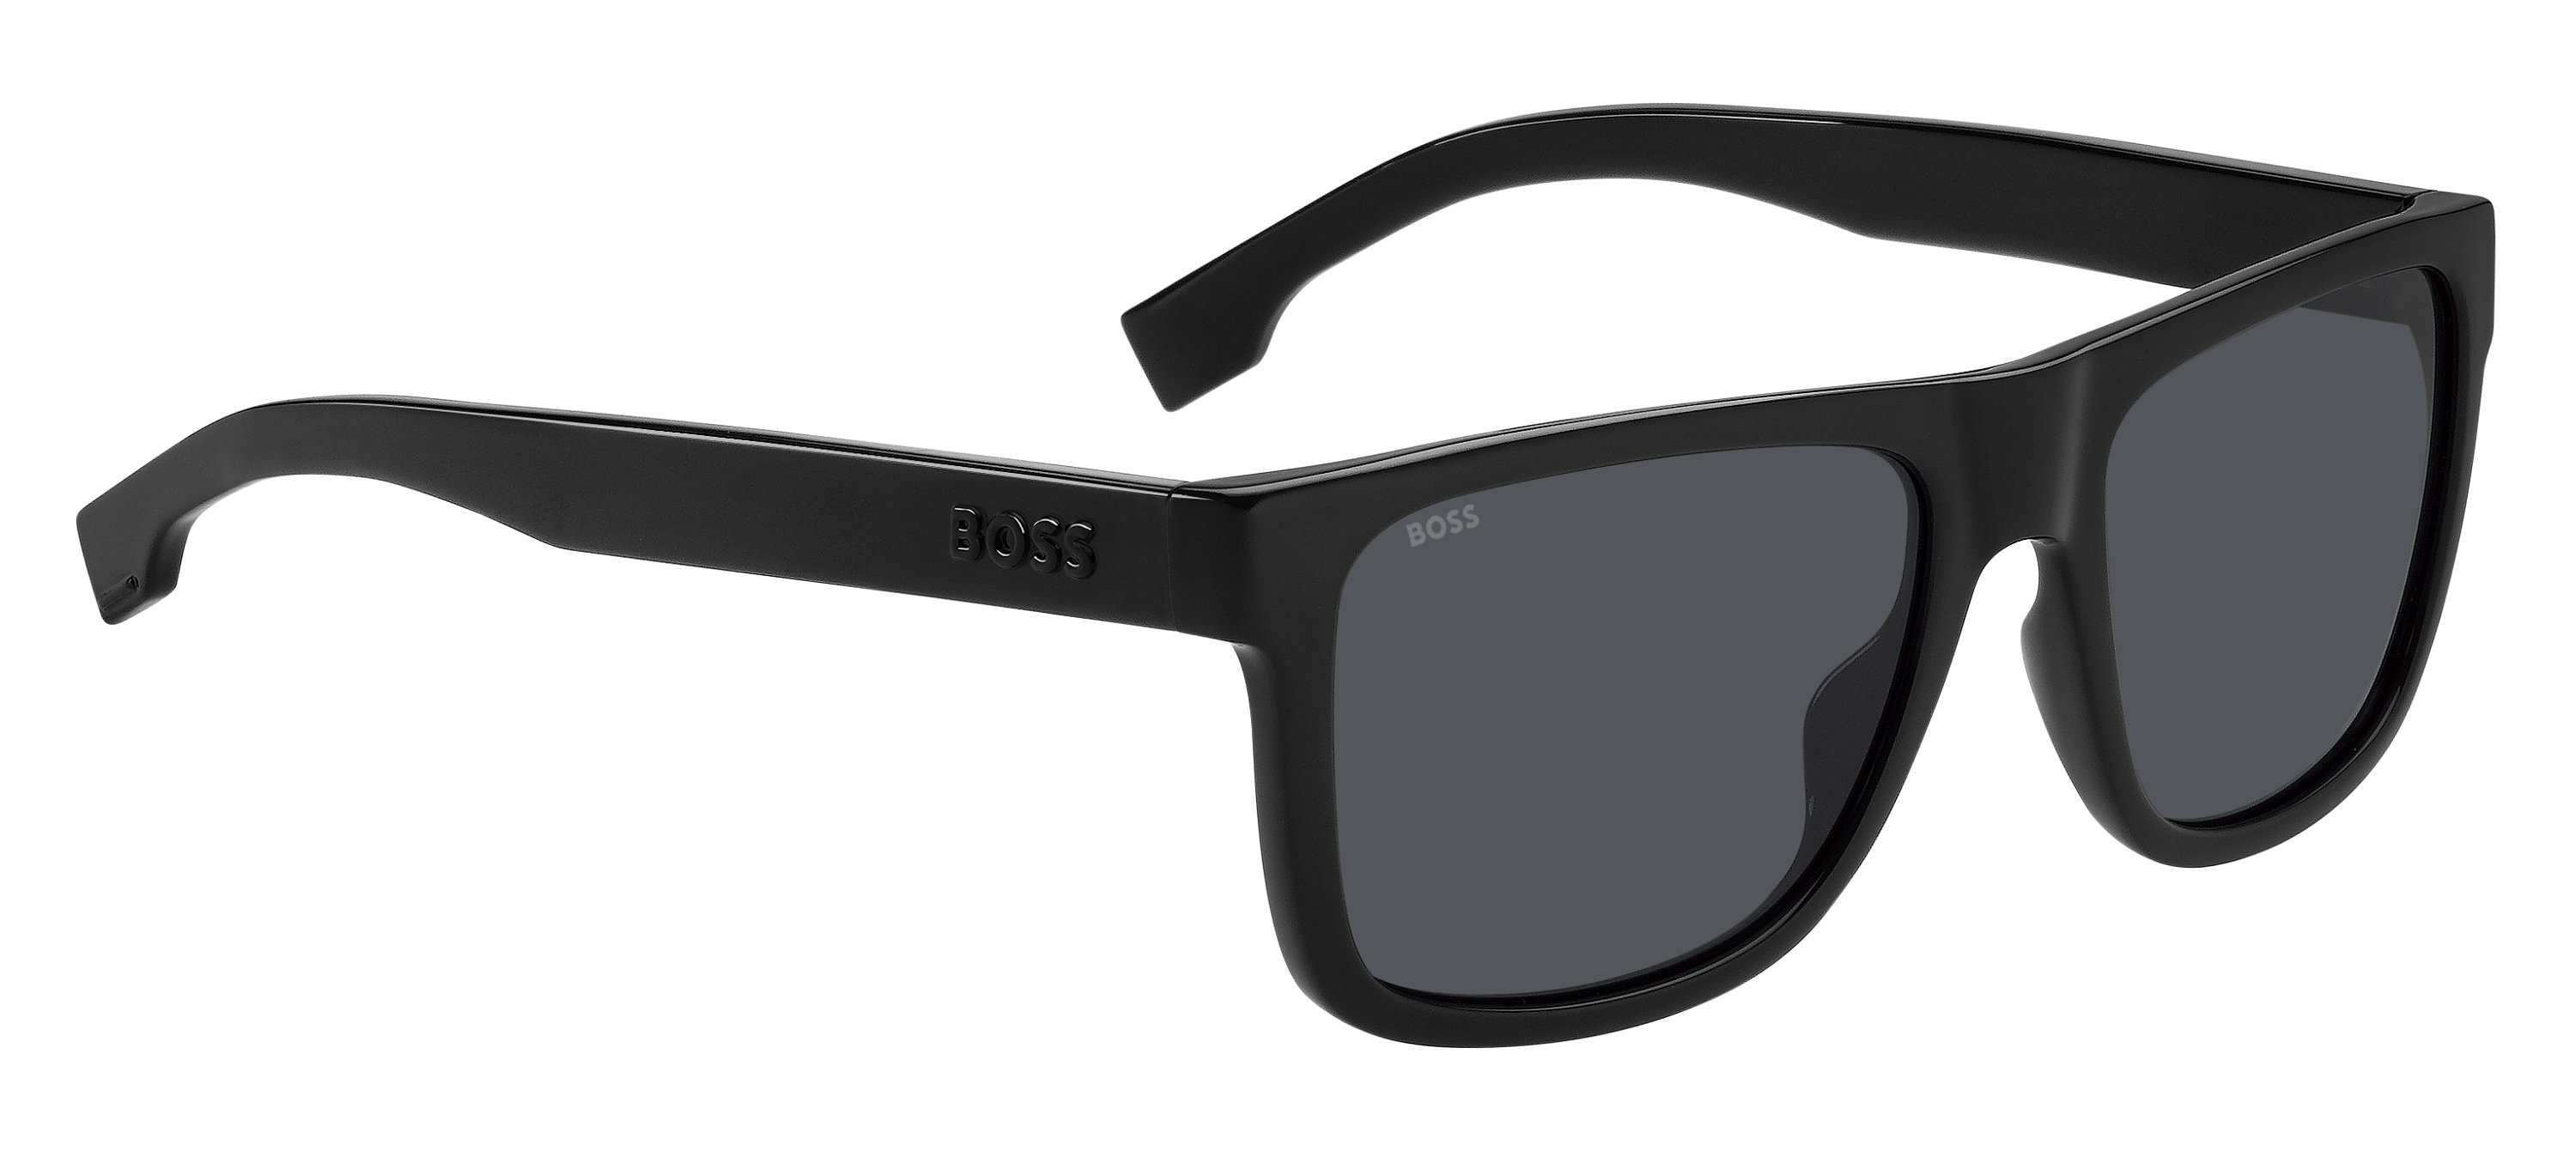 Das Bild zeigt die Sonnenbrille BOSS1647S 807 von der Marke BOSS in Schwarz.